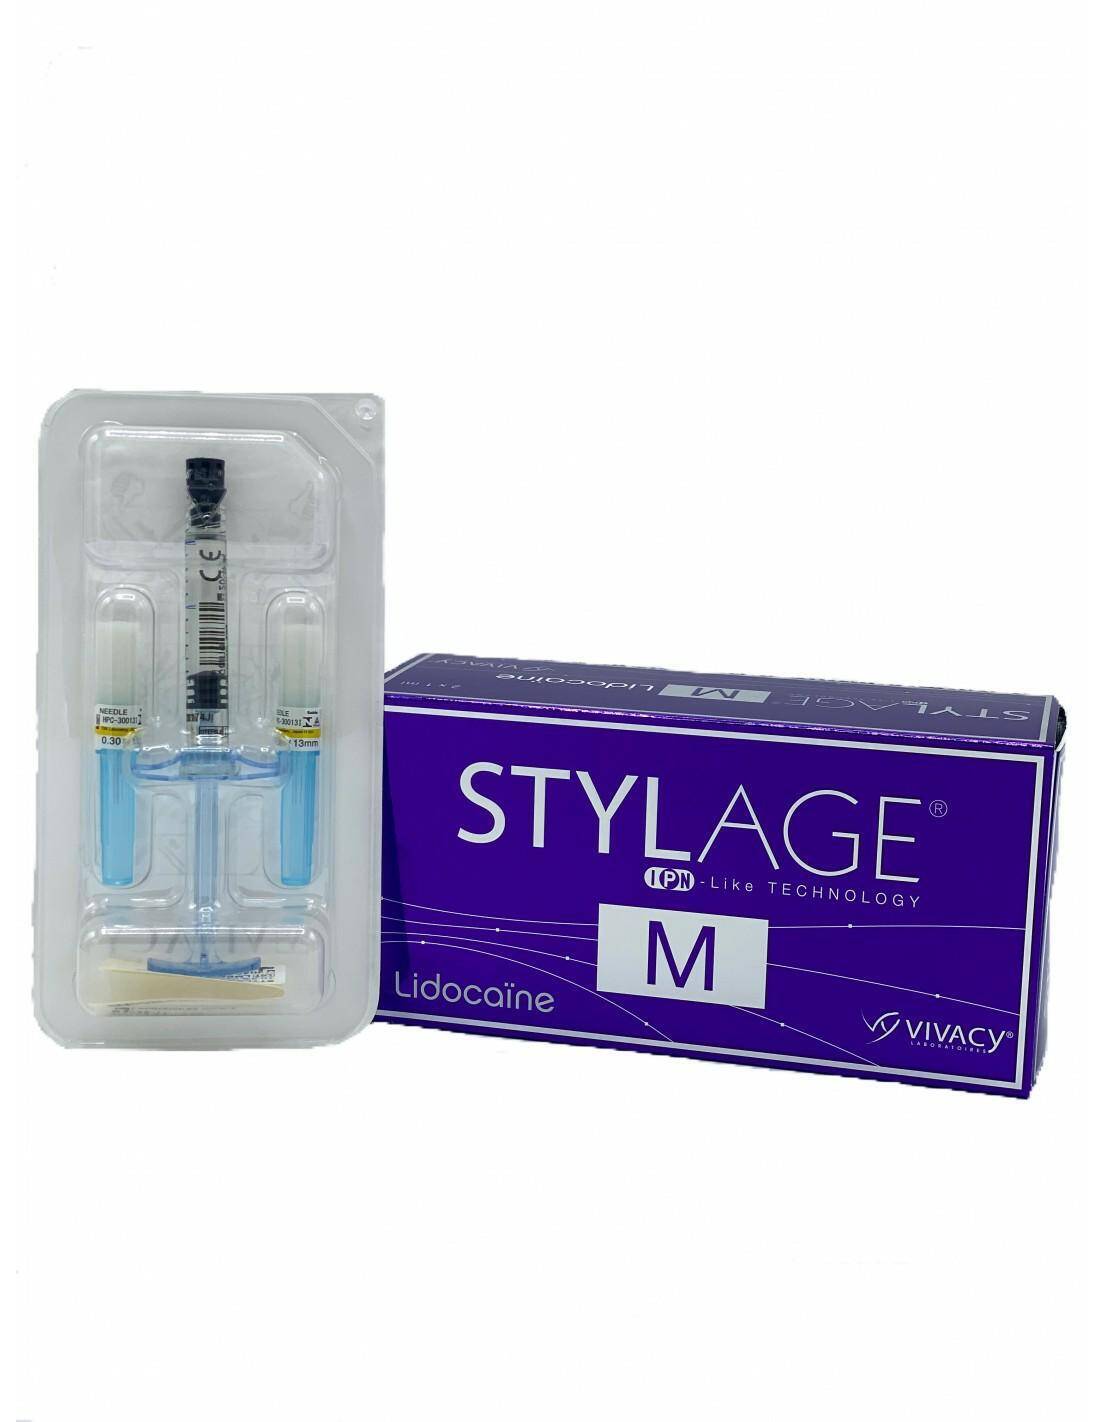 Stylage M Lidocaine 2x1ml